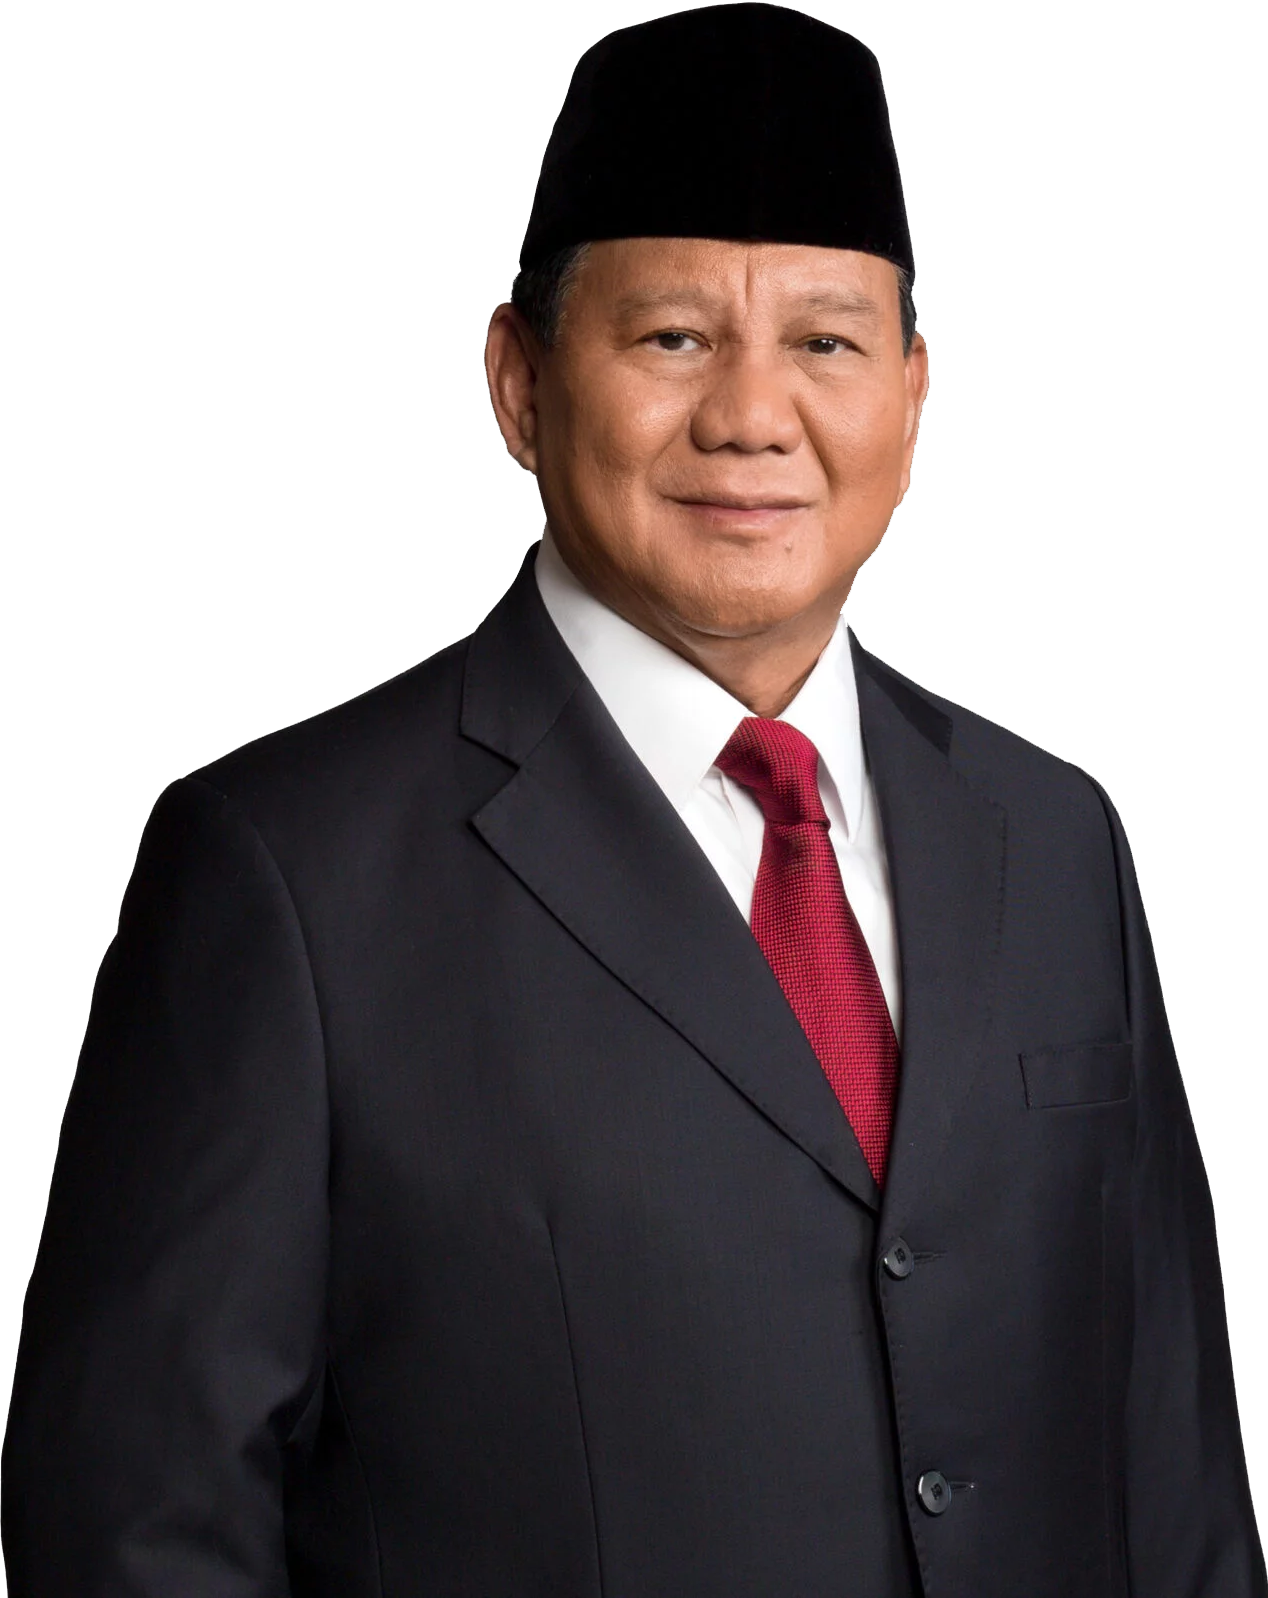 Prabowo Subianto Website